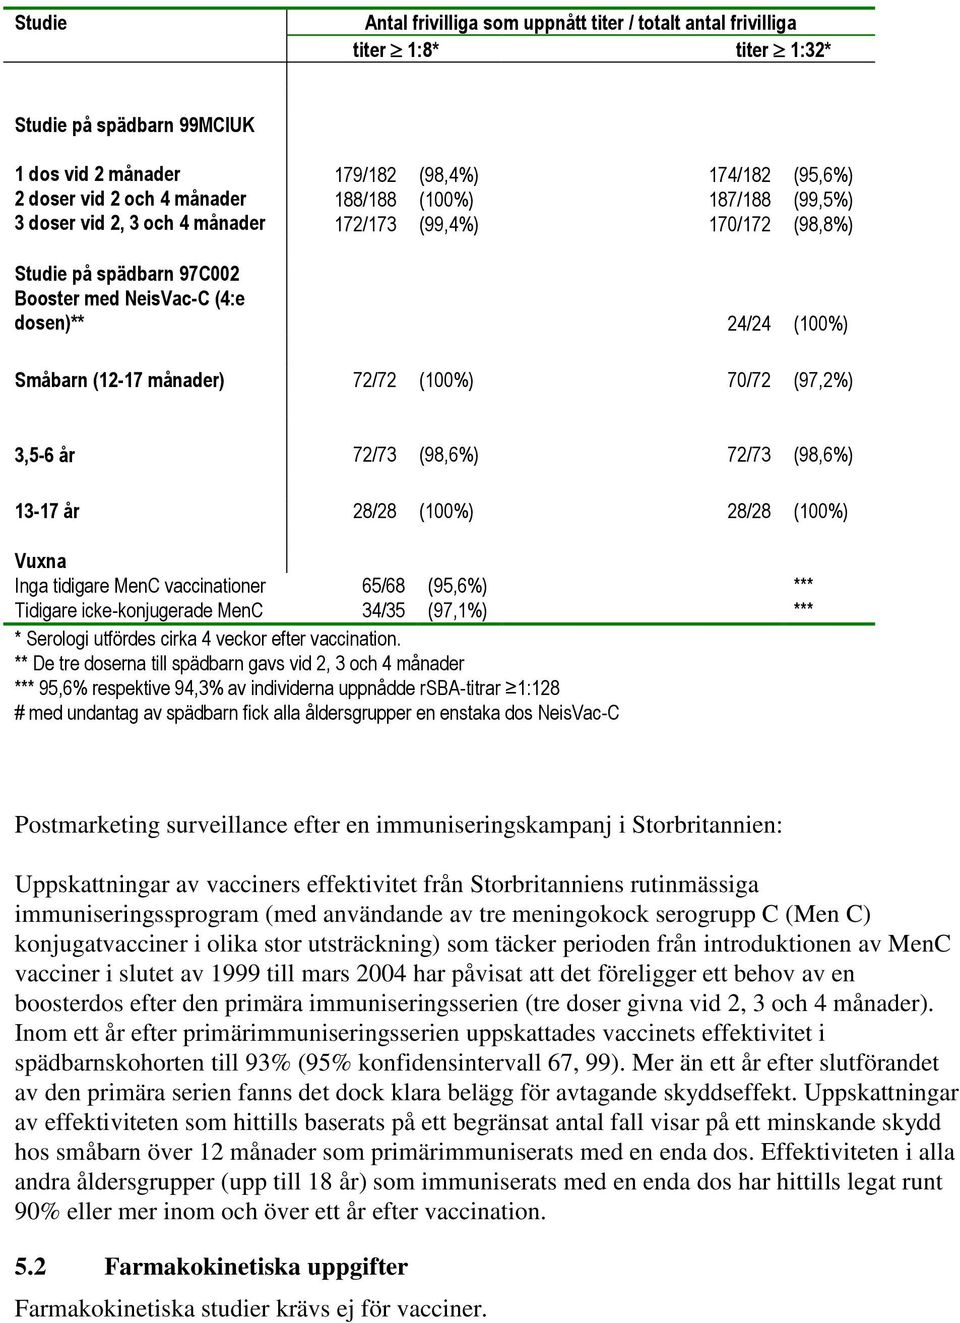 (100%) 70/72 (97,2%) 3,5-6 år 72/73 (98,6%) 72/73 (98,6%) 13-17 år 28/28 (100%) 28/28 (100%) Vuxna Inga tidigare MenC vaccinationer Tidigare icke-konjugerade MenC 65/68 34/35 (95,6%) (97,1%) *